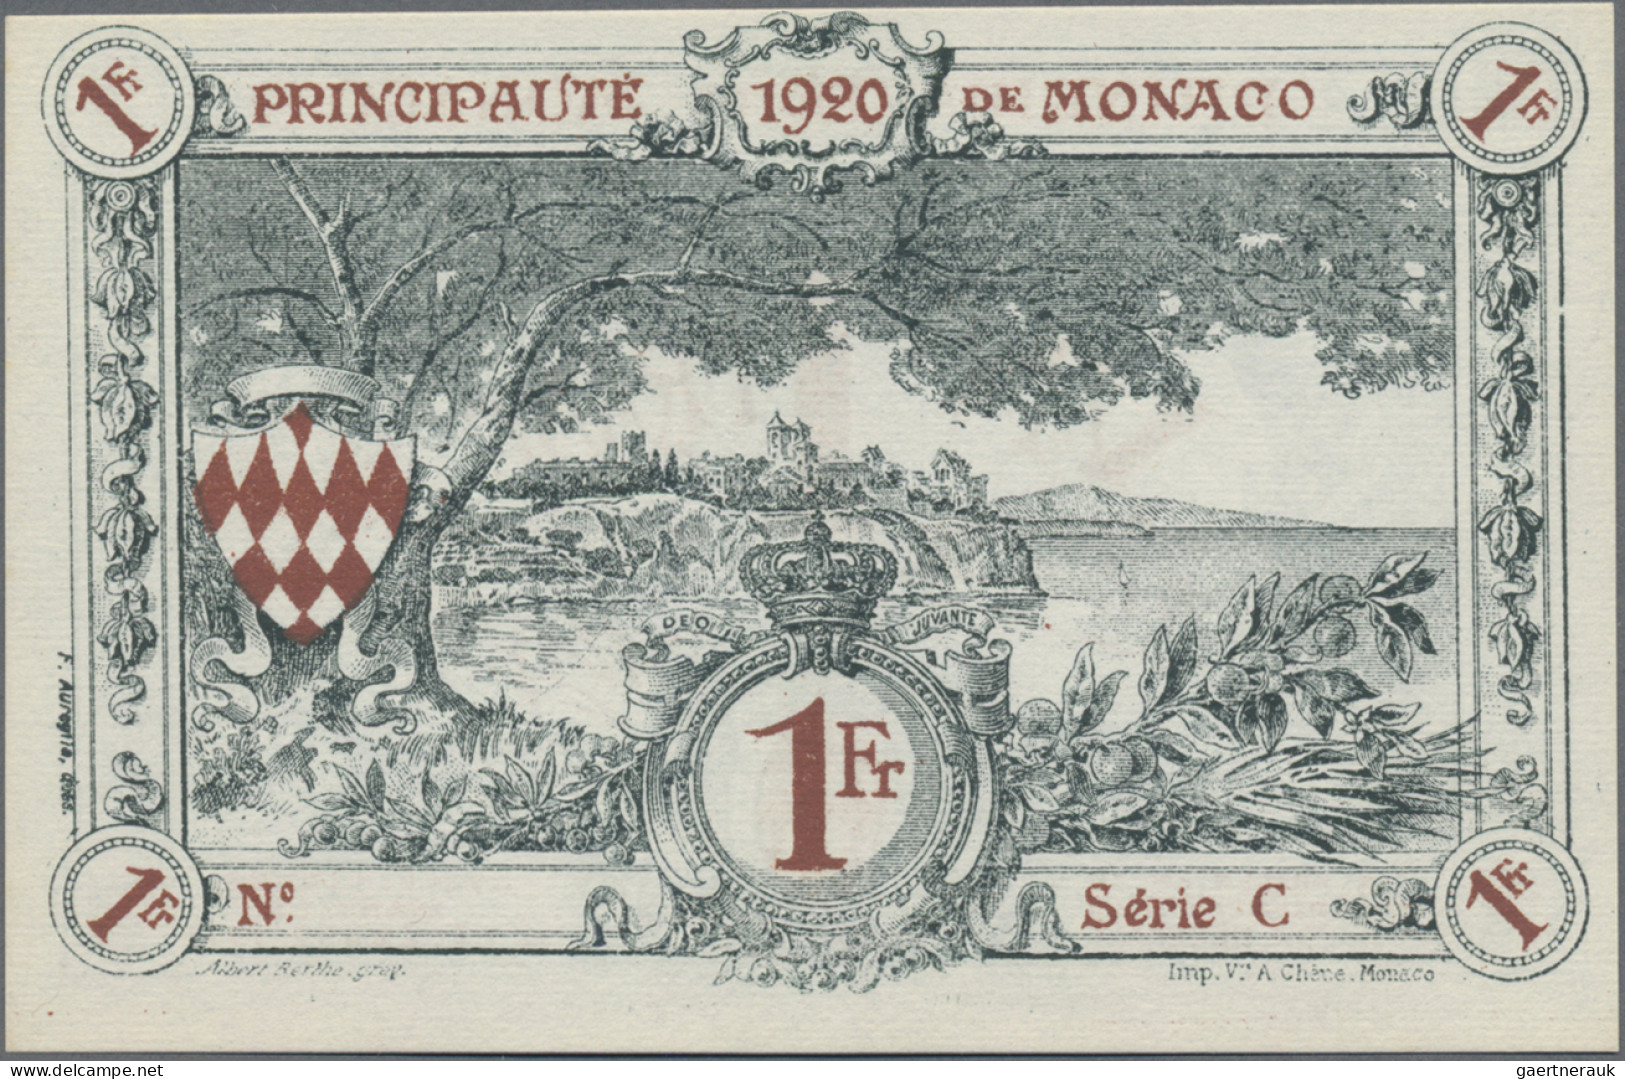 Monaco: Principauté De Monaco, 1 Franc 1920, Remainder Without Serial #, Series - Monaco